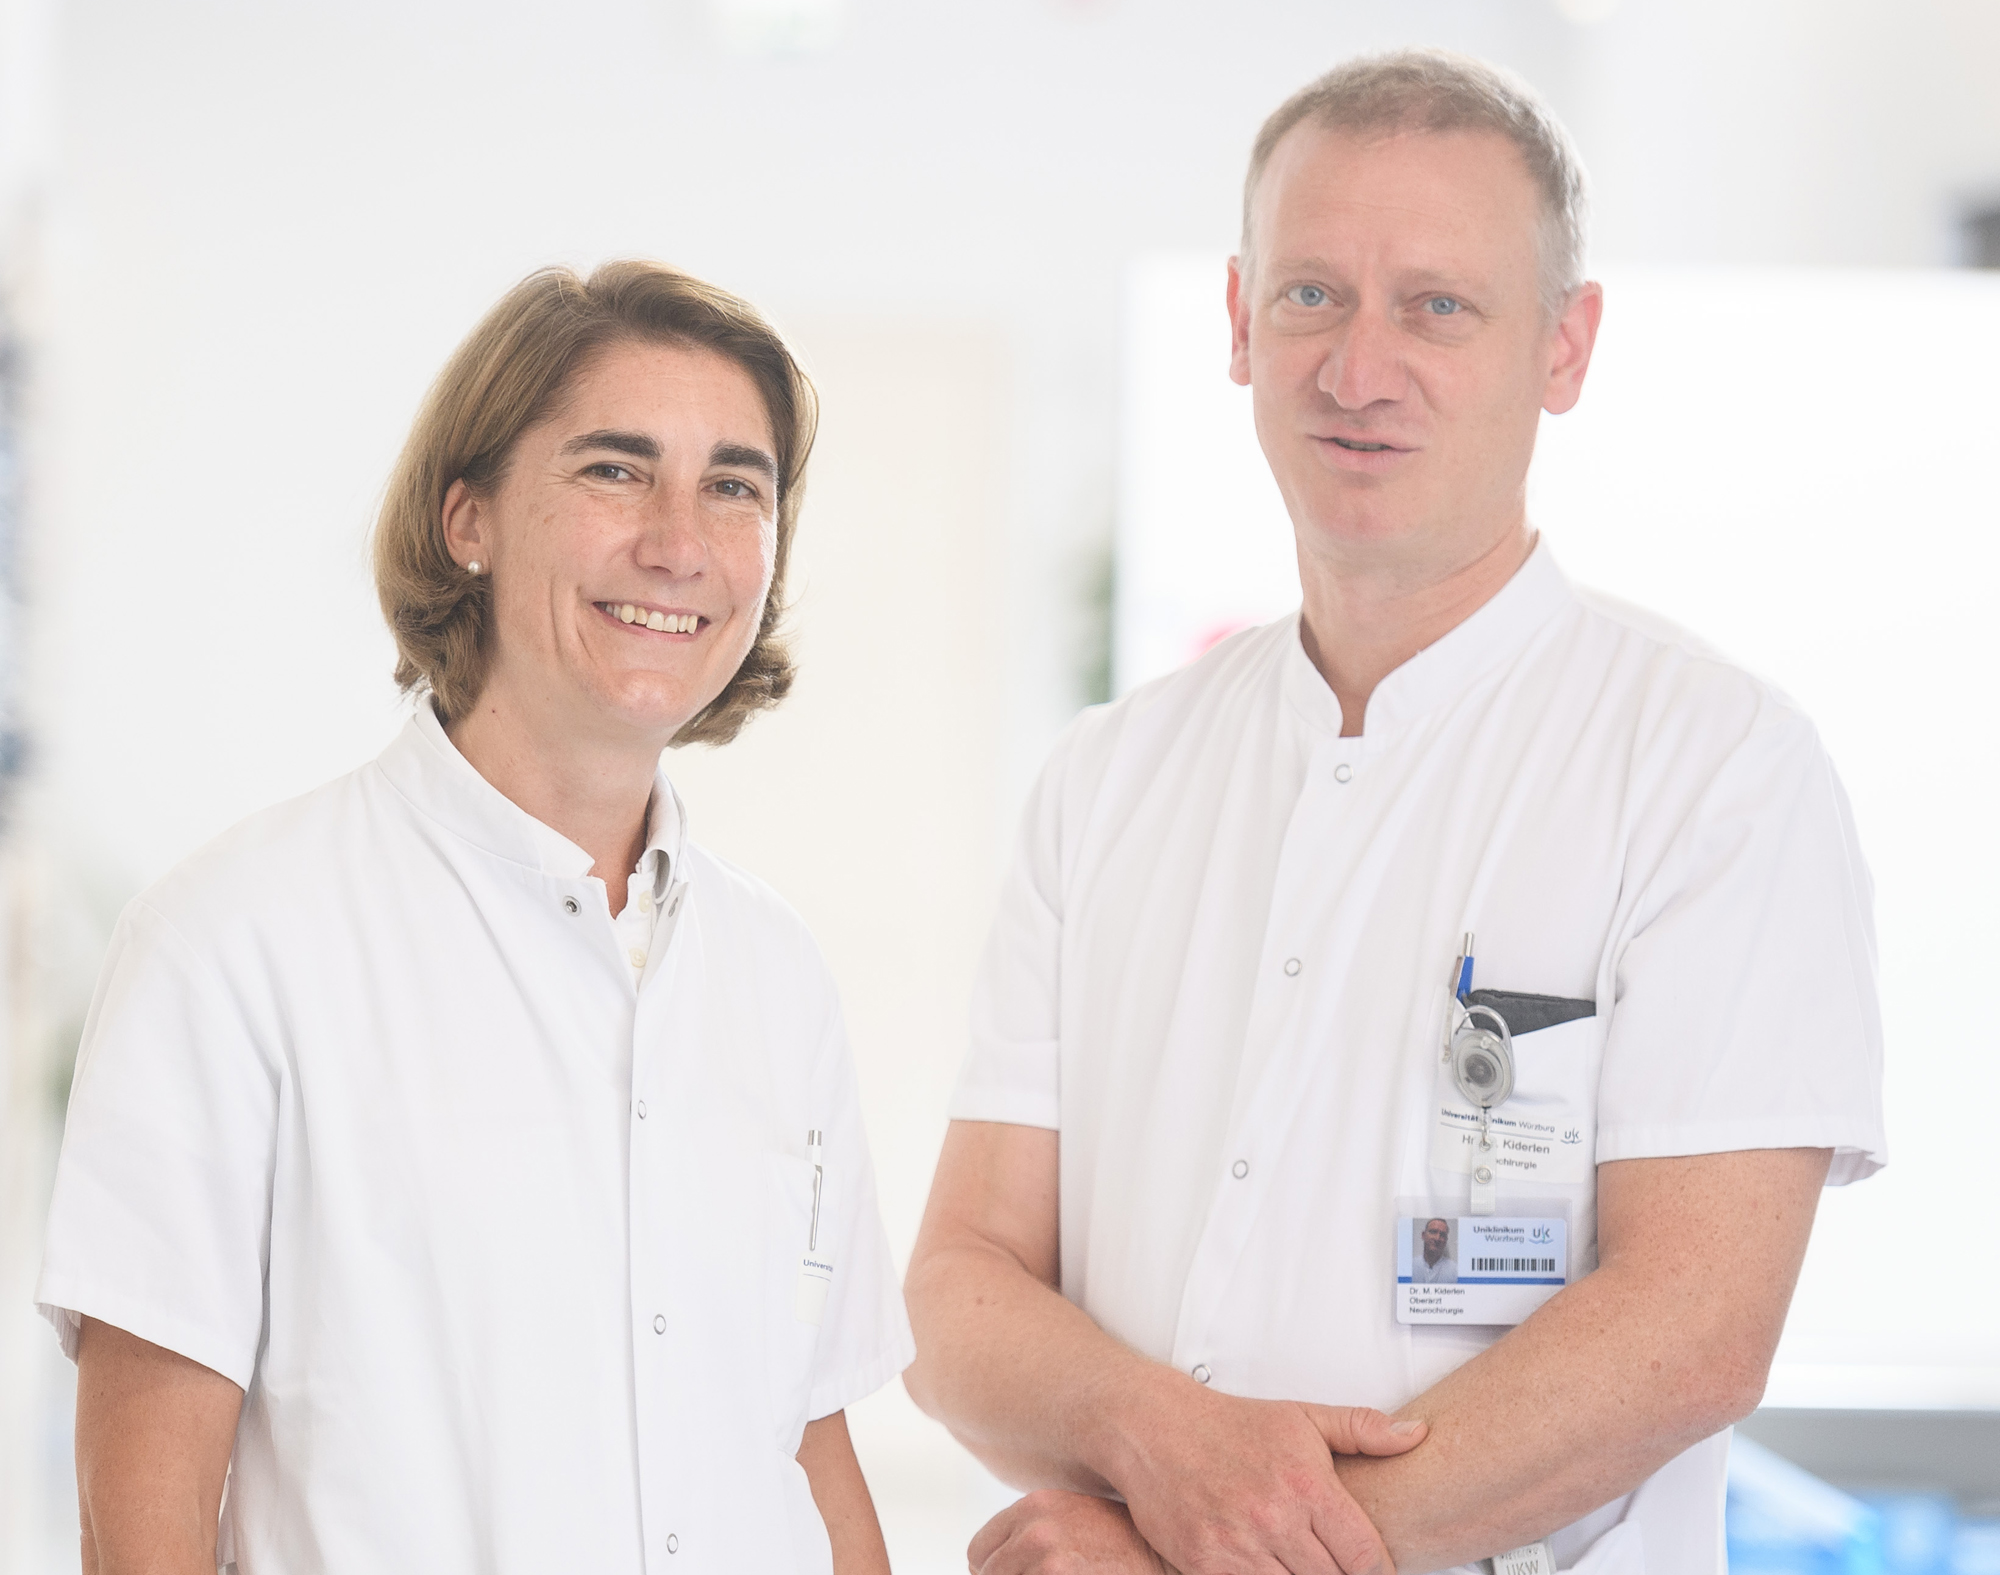 Dr. Bettina Meyer und Dr. Michael Kiderlen vom Uniklinikum Würzburg freuen sich über die Kapazitätssteigerung bei der stationären multimodalen Schmerztherapie.